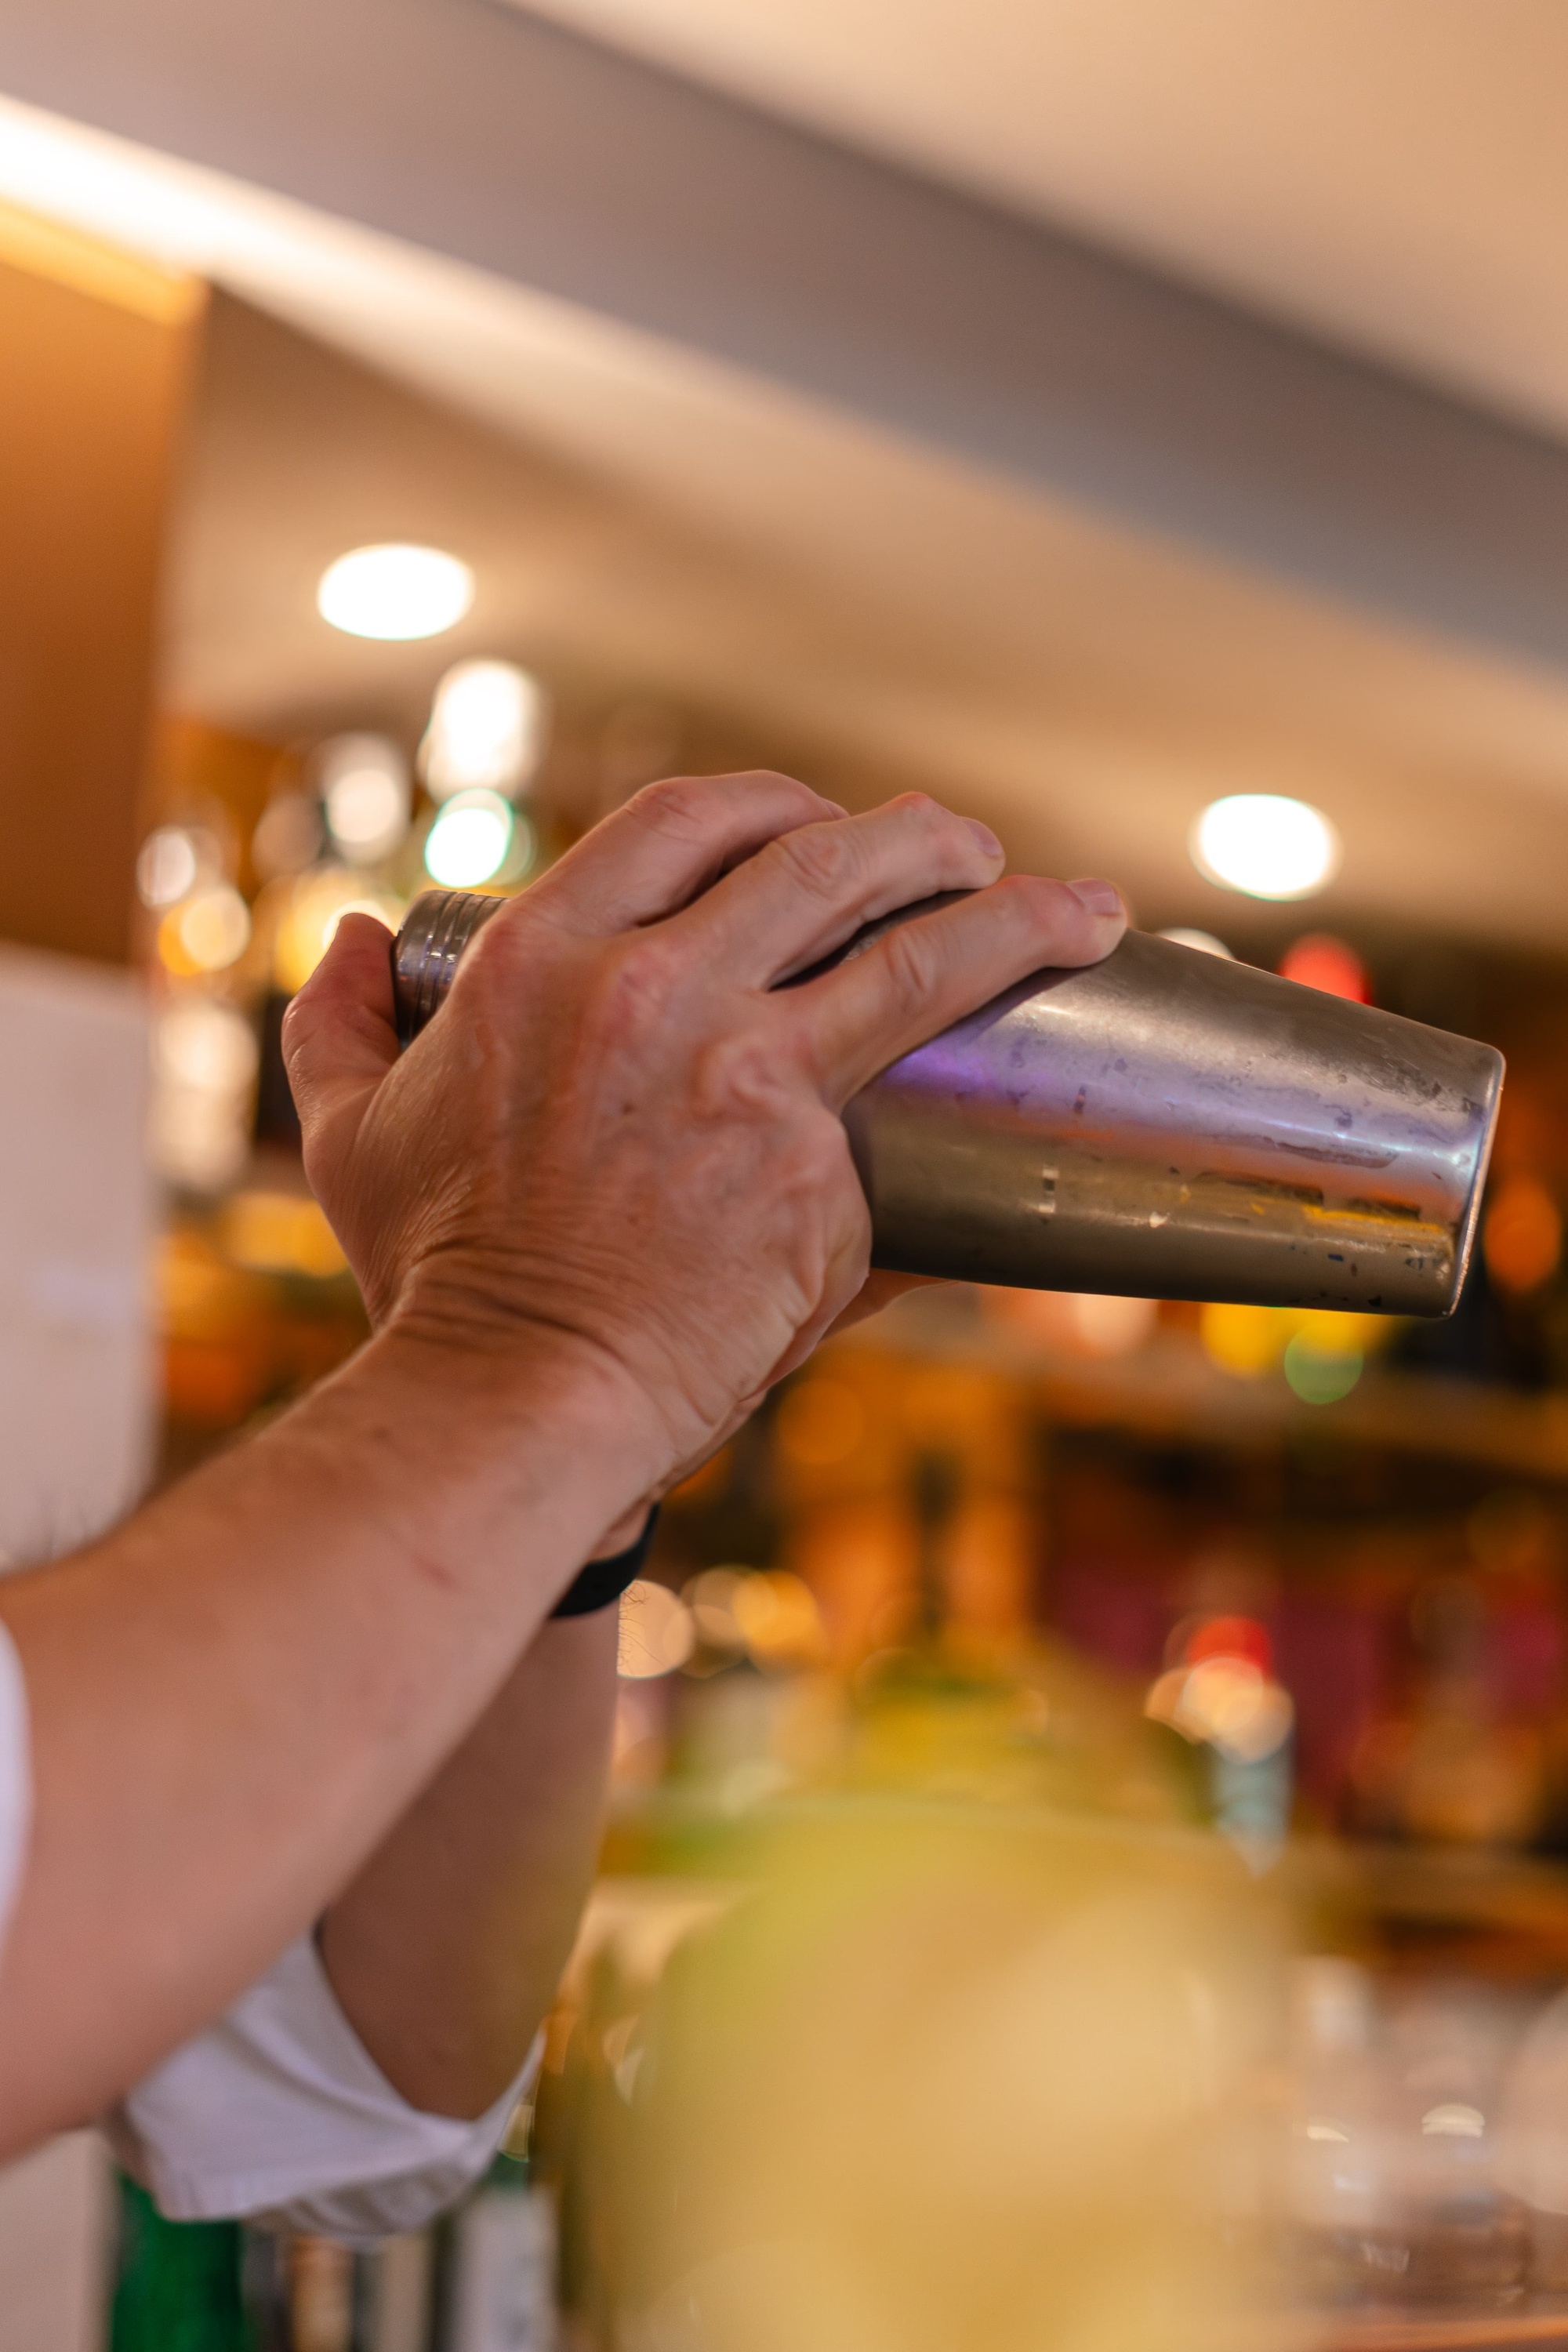 un barman agita un cóctel en un shaker de acero inoxidable